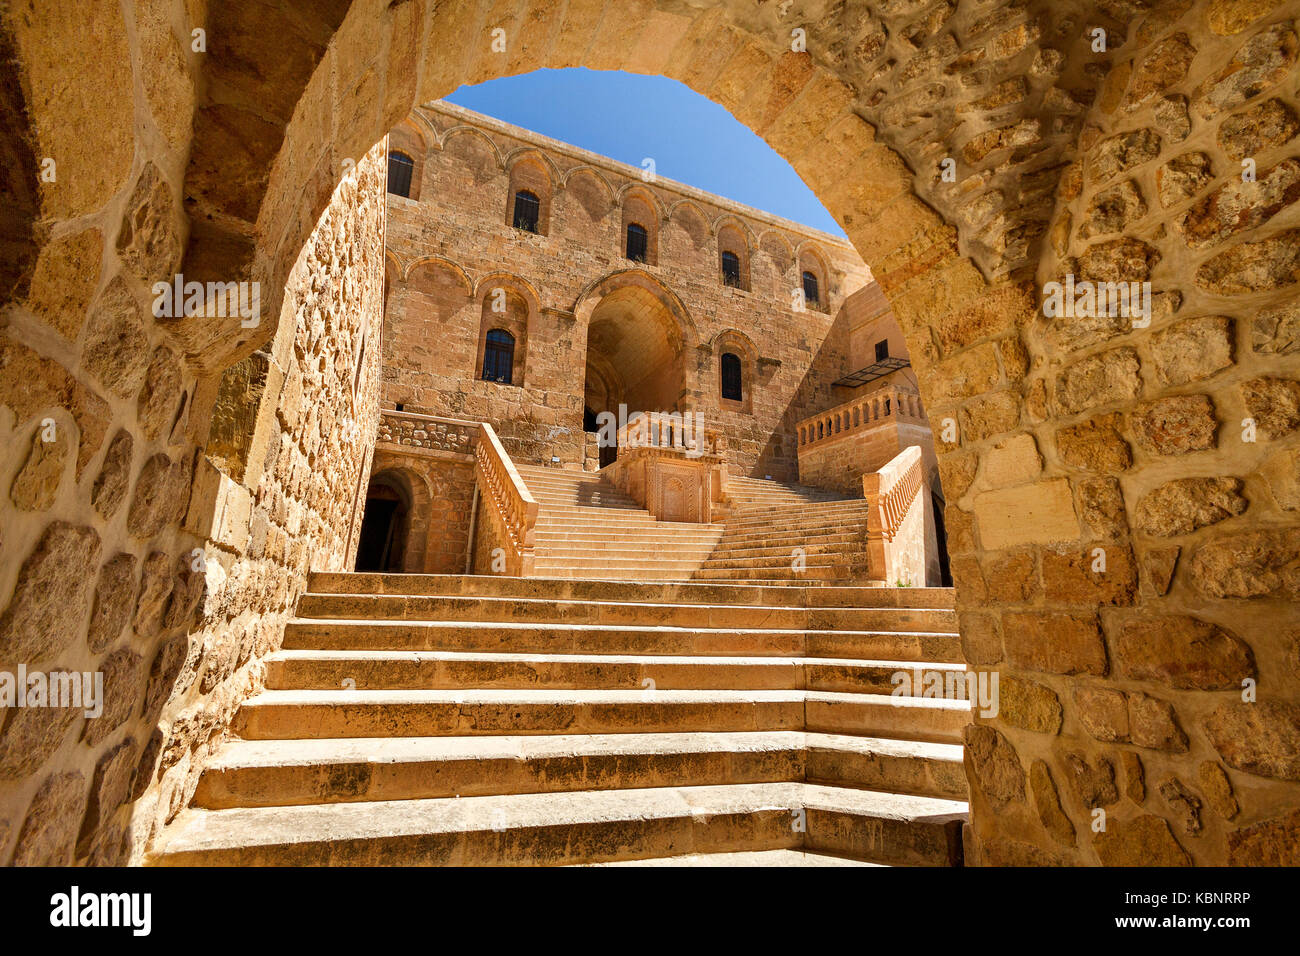 Historischer Dayrul Zafaran syrisch-orthodoxer Klosterkomplex, der wegen seiner Farbe auch als Kloster von Saffron bekannt ist, in Mardin, Türkei. Stockfoto